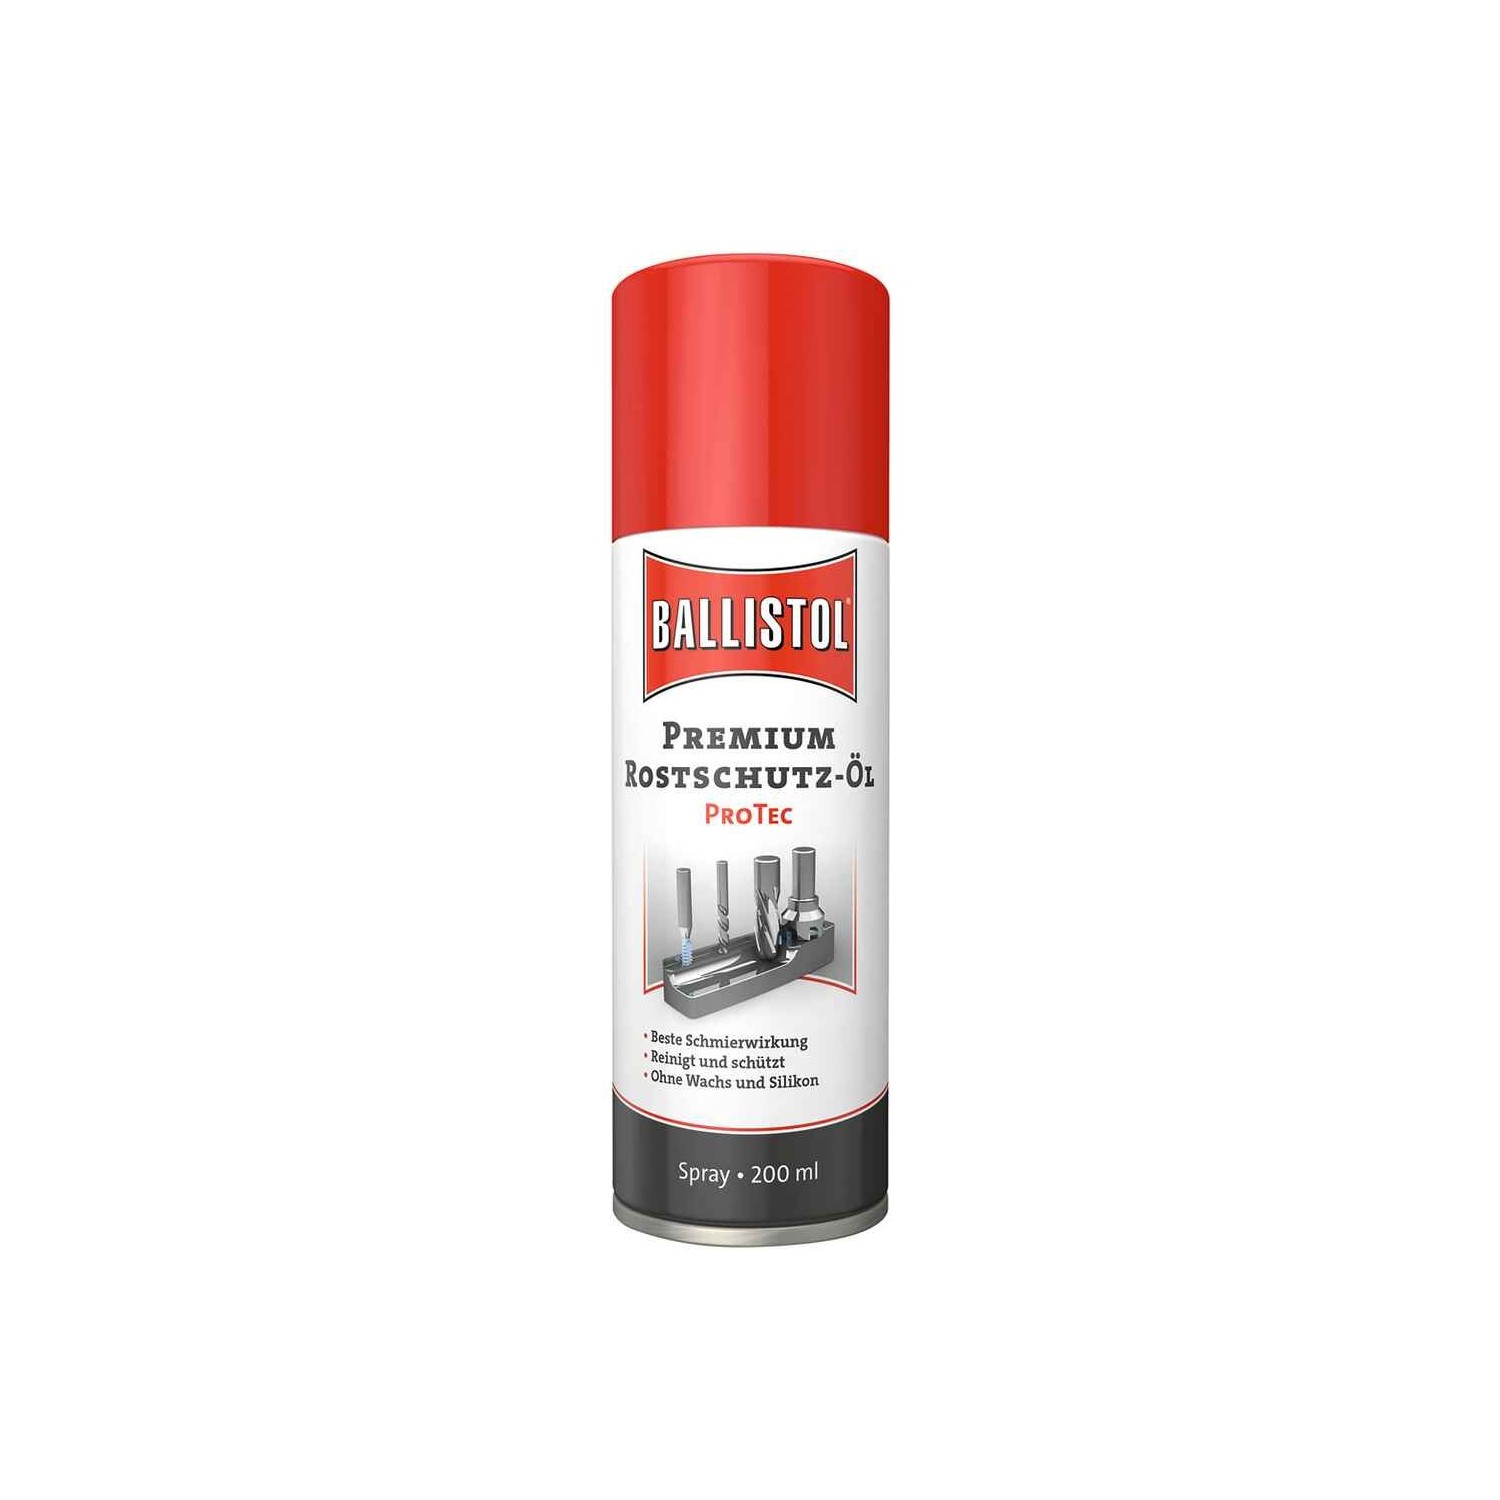 BALLISTOL Premium Rostschutz-Öl ProTec – Spray, 200 ml